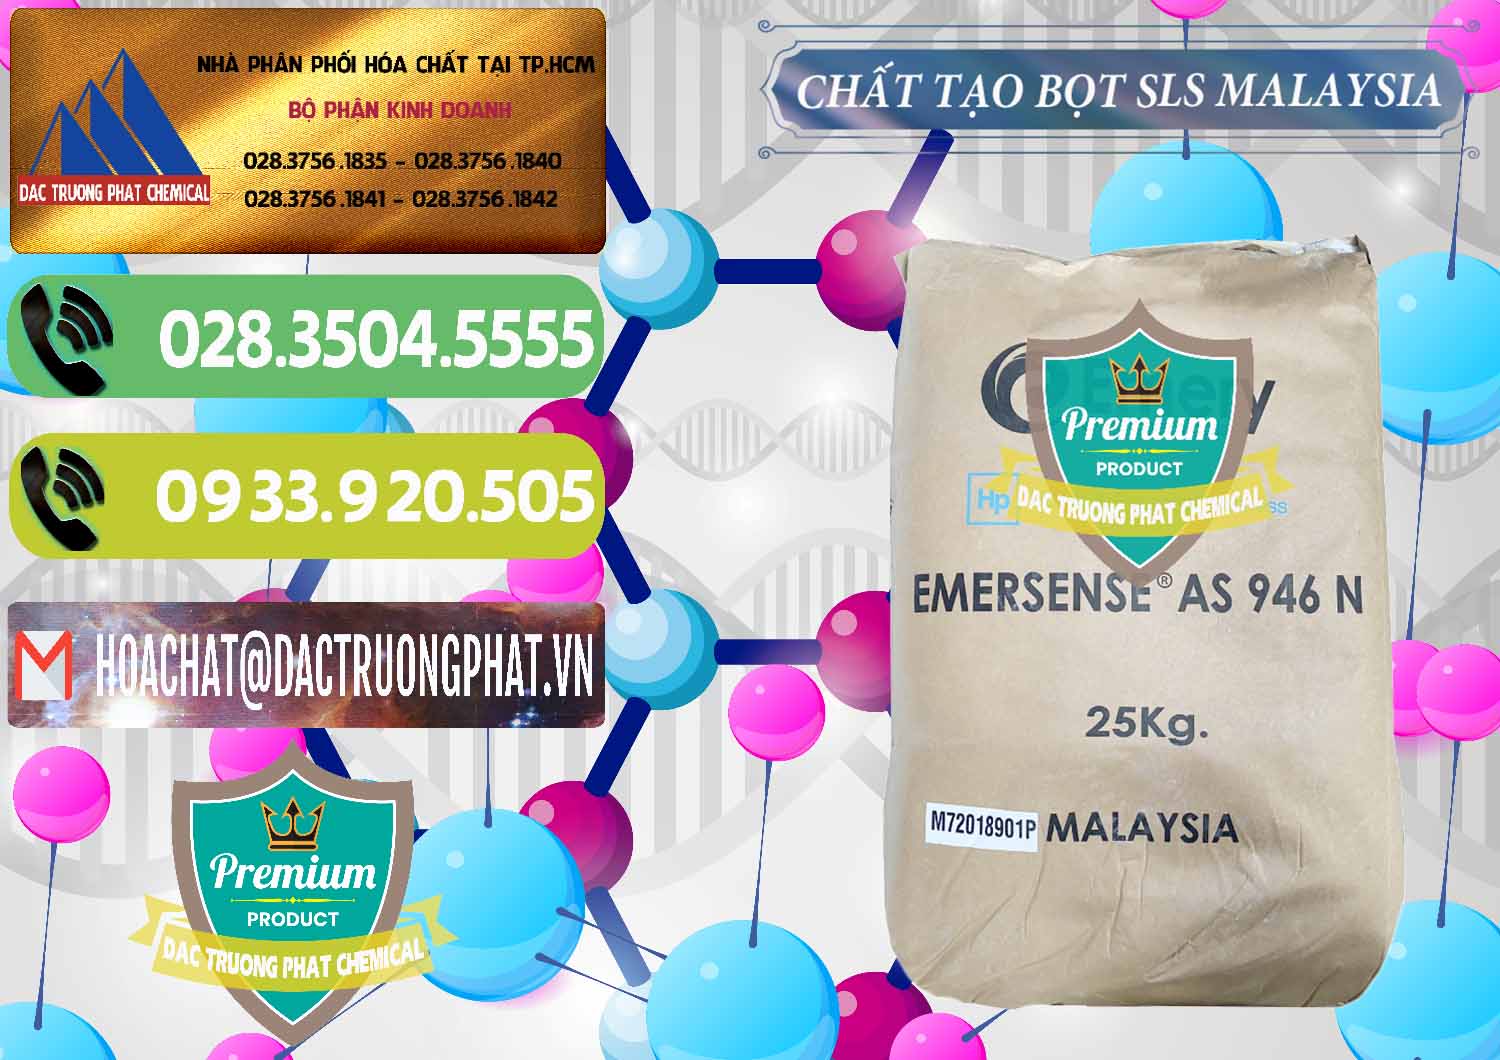 Bán Chất Tạo Bọt SLS Emery - Emersense AS 946N Mã Lai Malaysia - 0423 - Nơi chuyên phân phối _ nhập khẩu hóa chất tại TP.HCM - hoachatmientay.vn